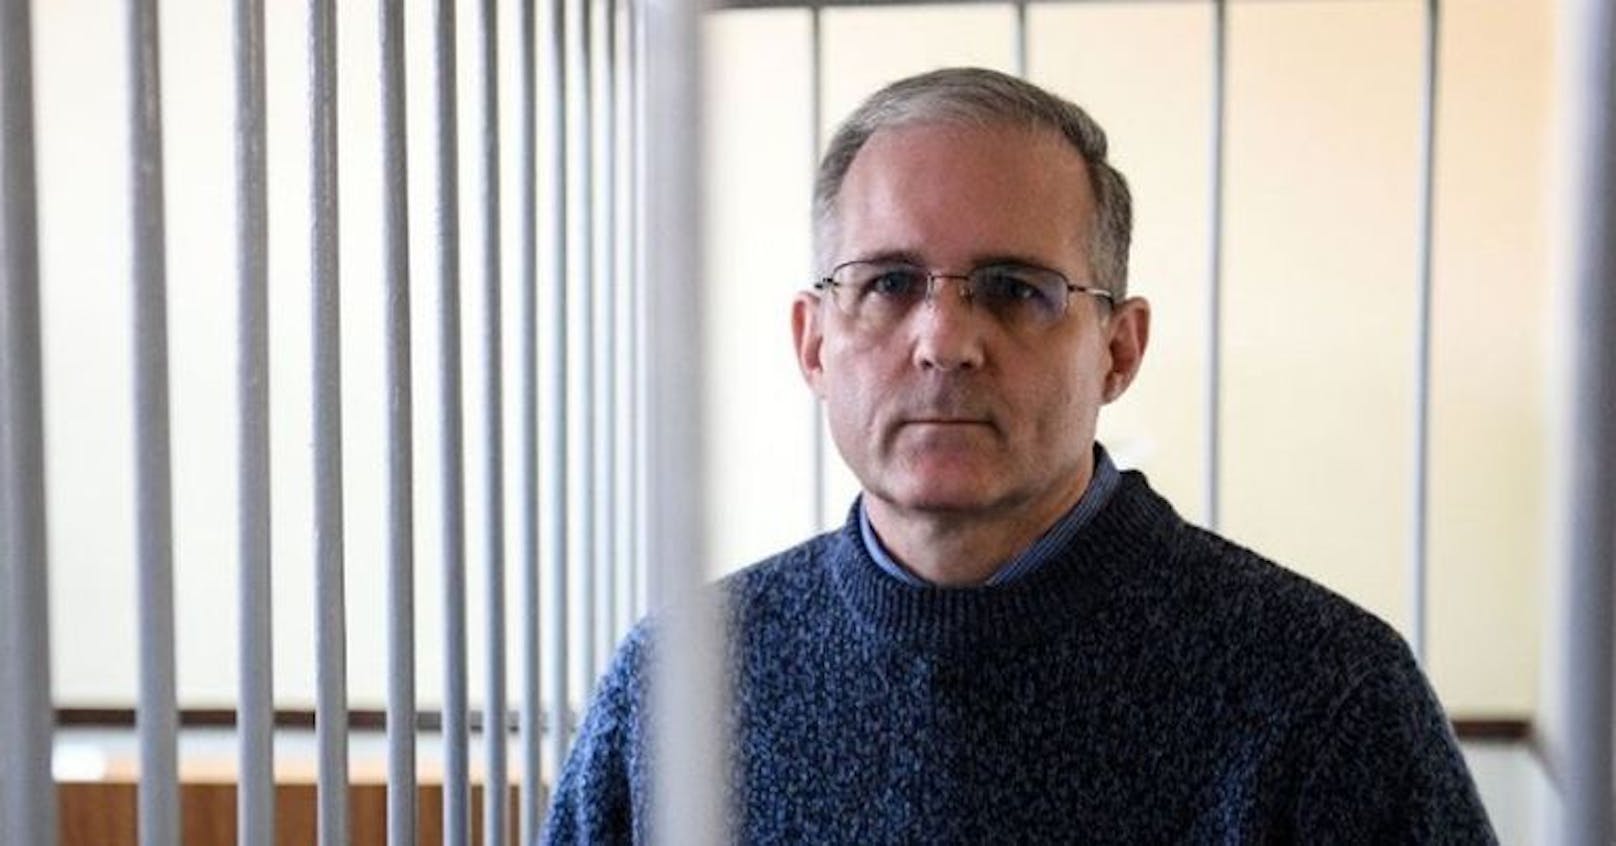 Angeblicher US-Spion in Russland zu 16 Jahren Haft verurteilt.